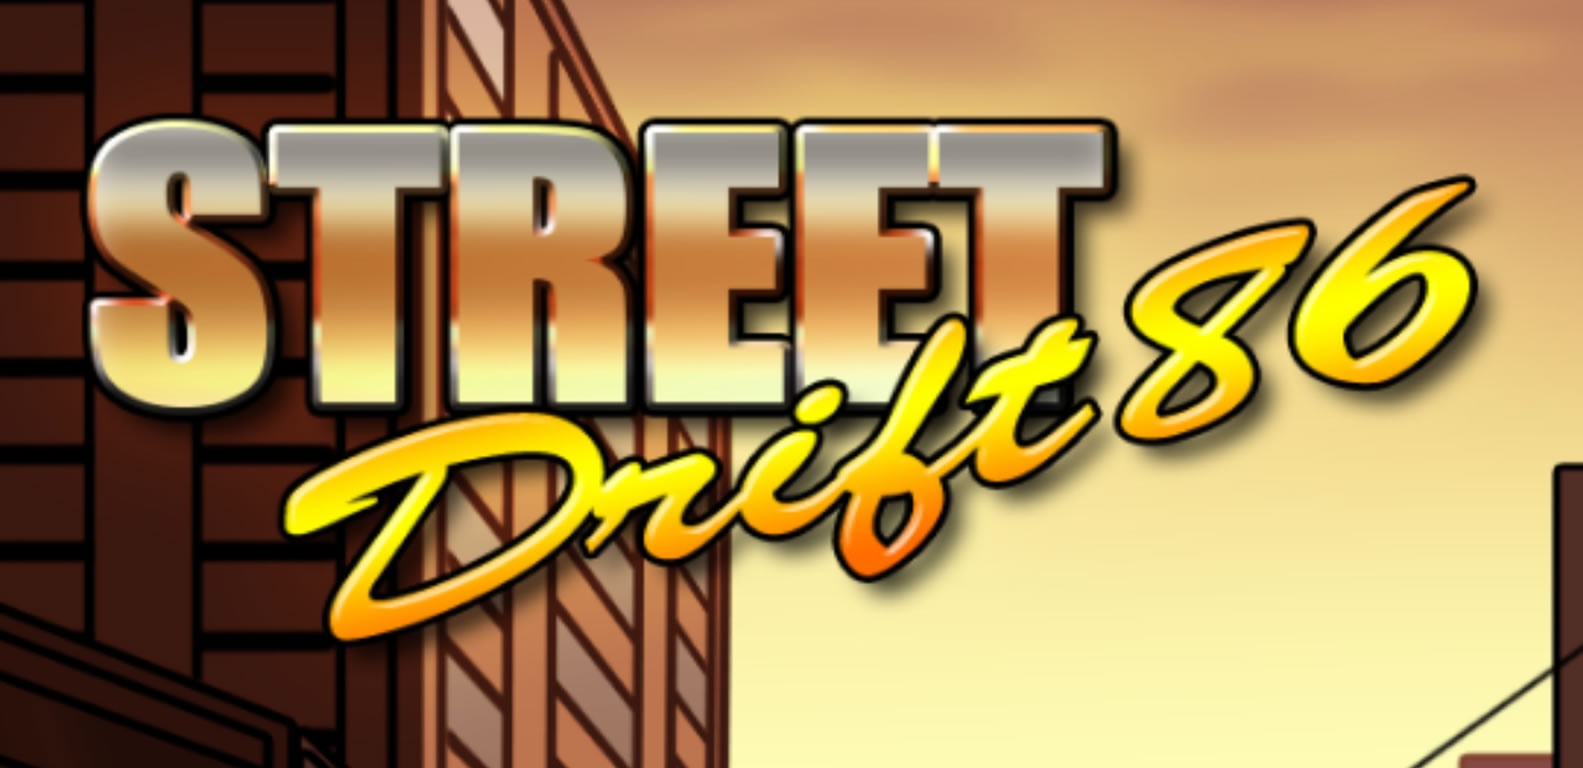 Street Drift 86 Review